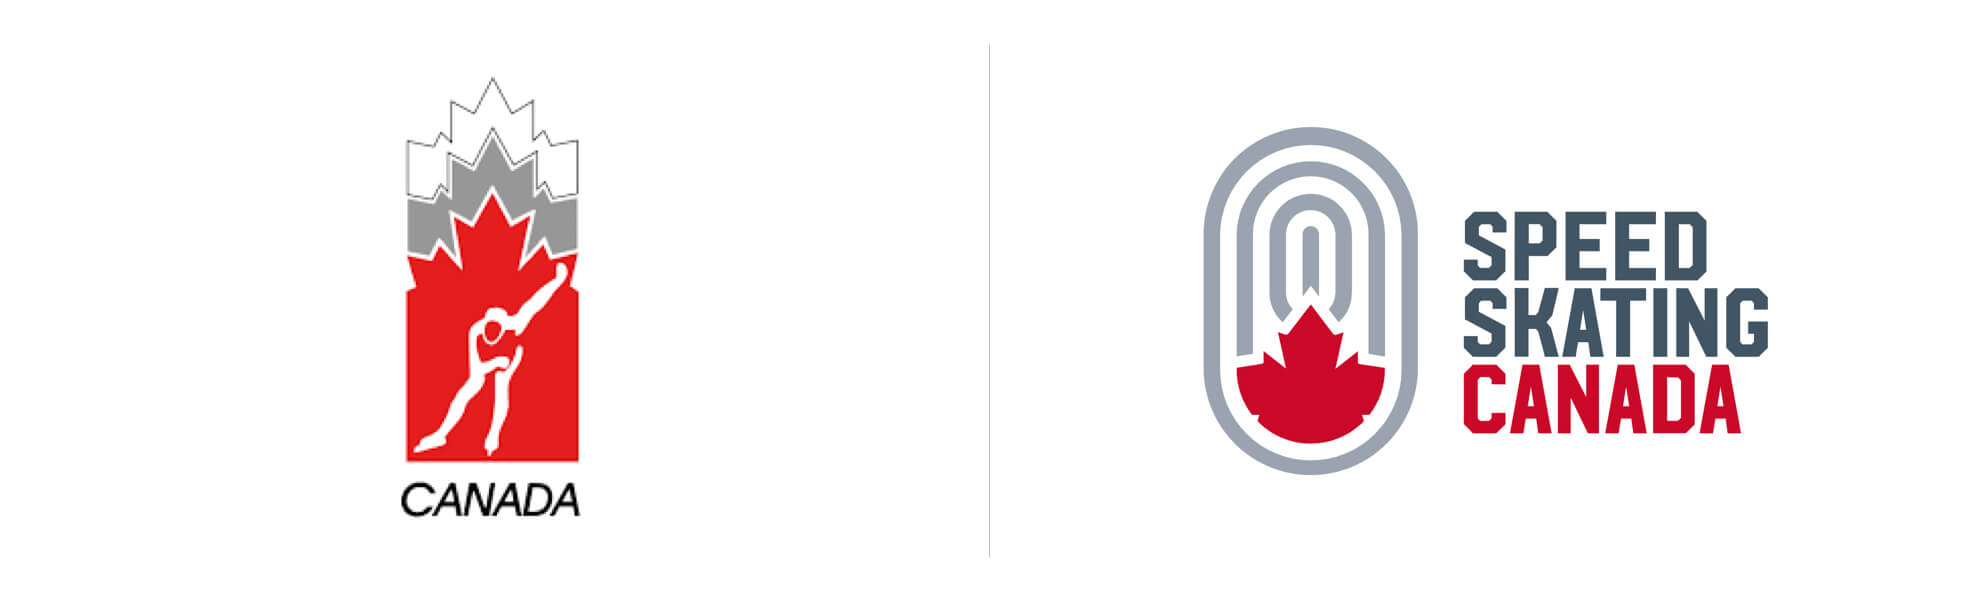 Kanadyjskie Łyżwiarstwo Szybkie z nowym logo